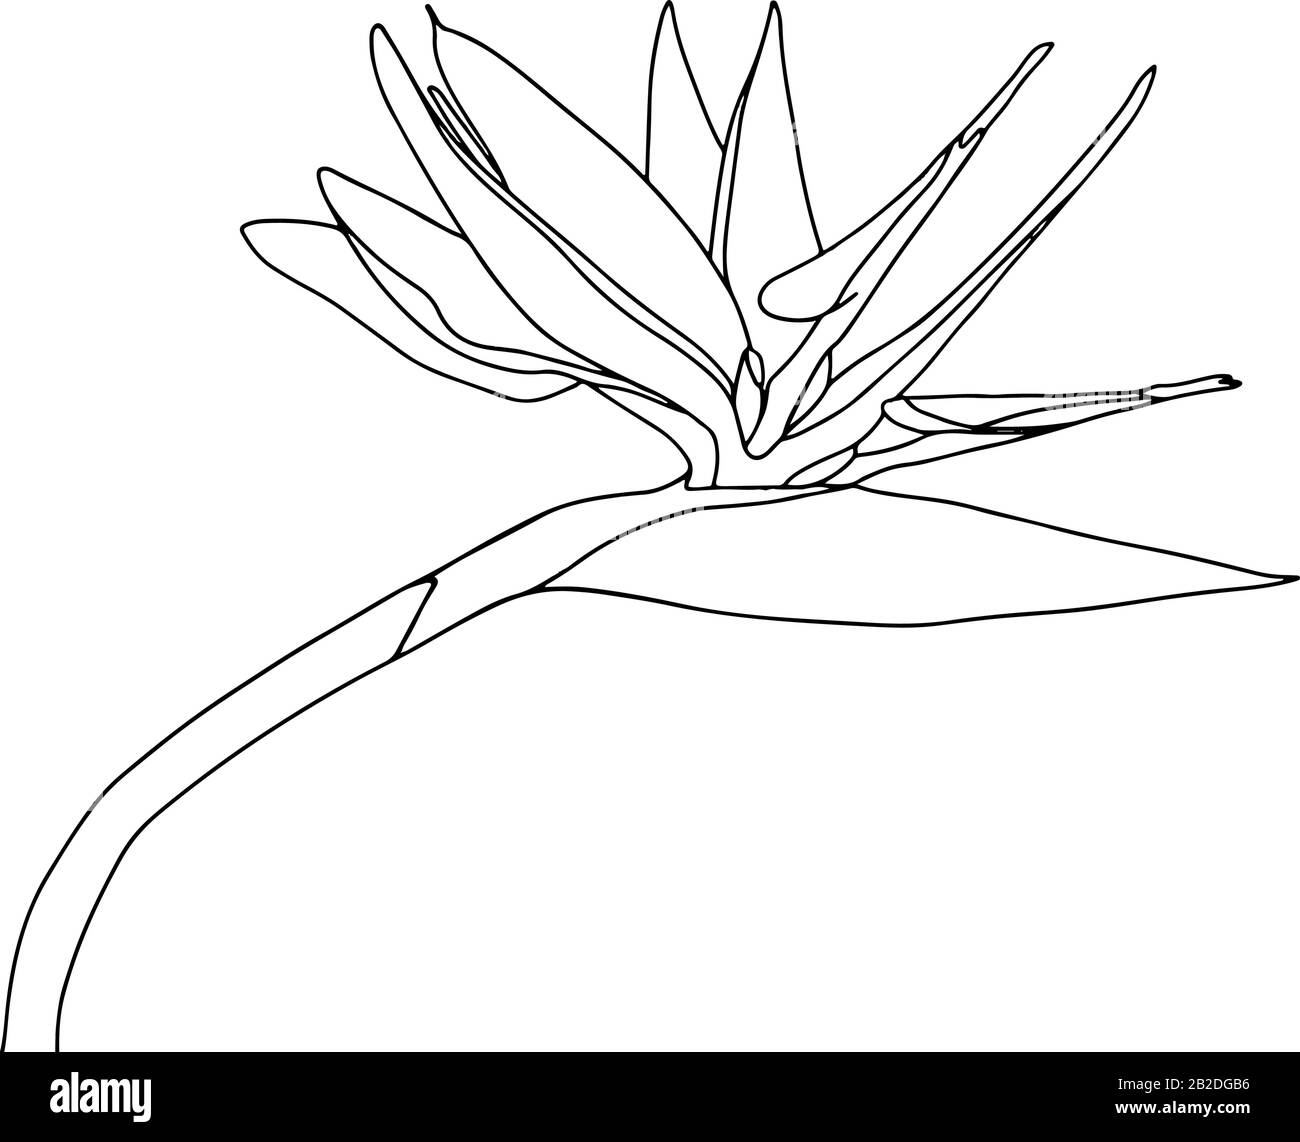 Strelitzia reginae tropisches Südafrika blüht isoliert auf weißem Grund. Vector Stock Illustration.Outline Tattoo Print,Logo.Bird of Paradise. Stock Vektor